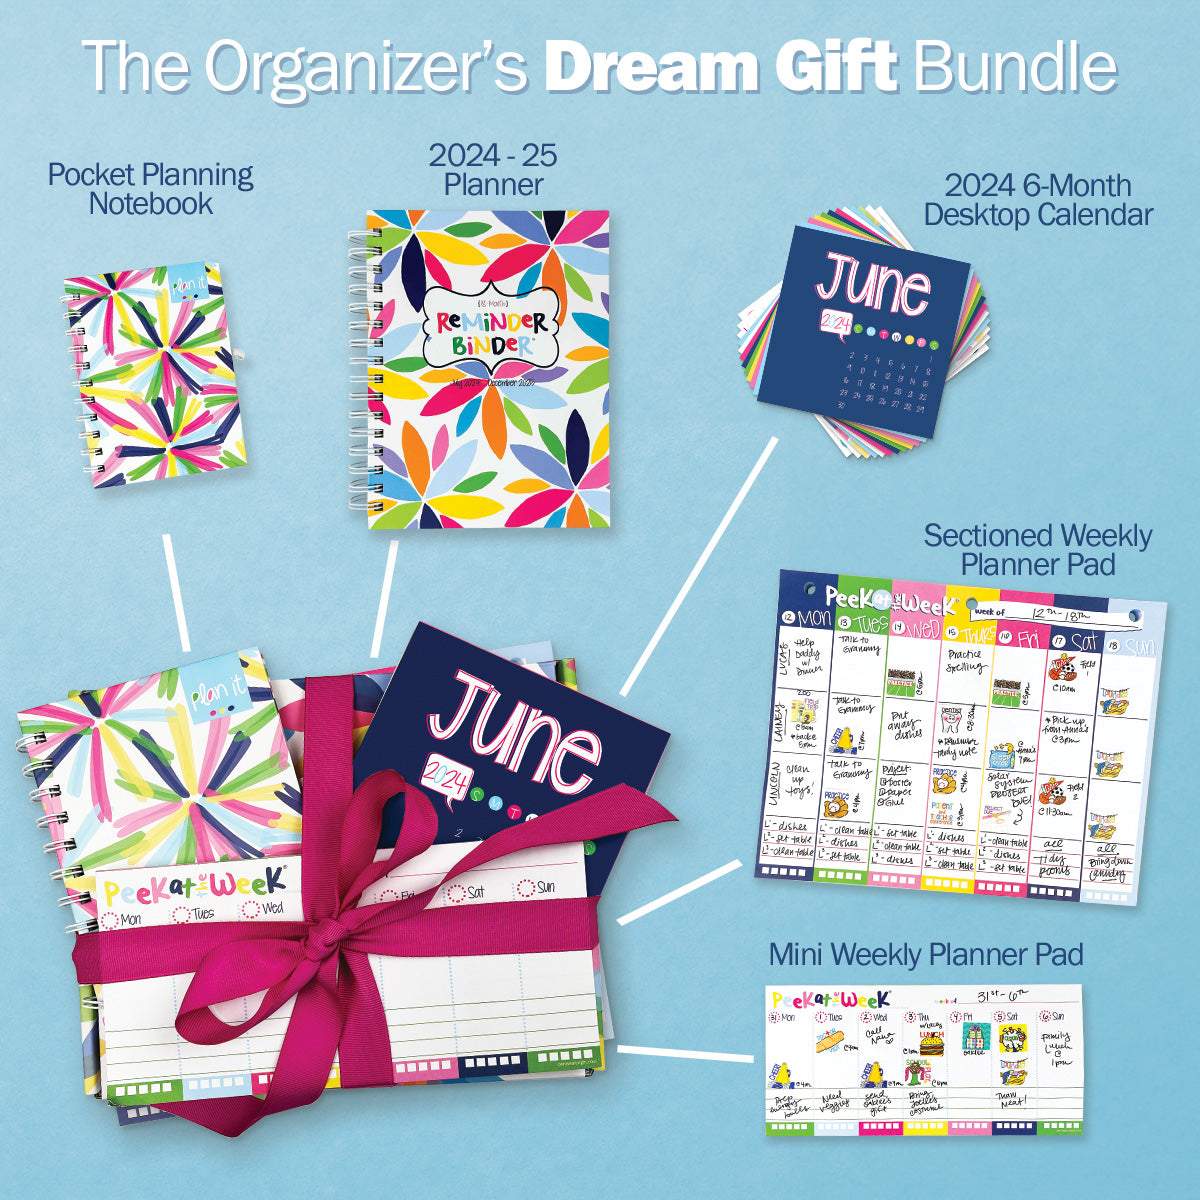 NEW! Dream Gift Planner Bundle | 2024-25 Reminder Binder® Planner | [2] Planner Pads Pocket Notebook & Mini Desktop Calendar Planner